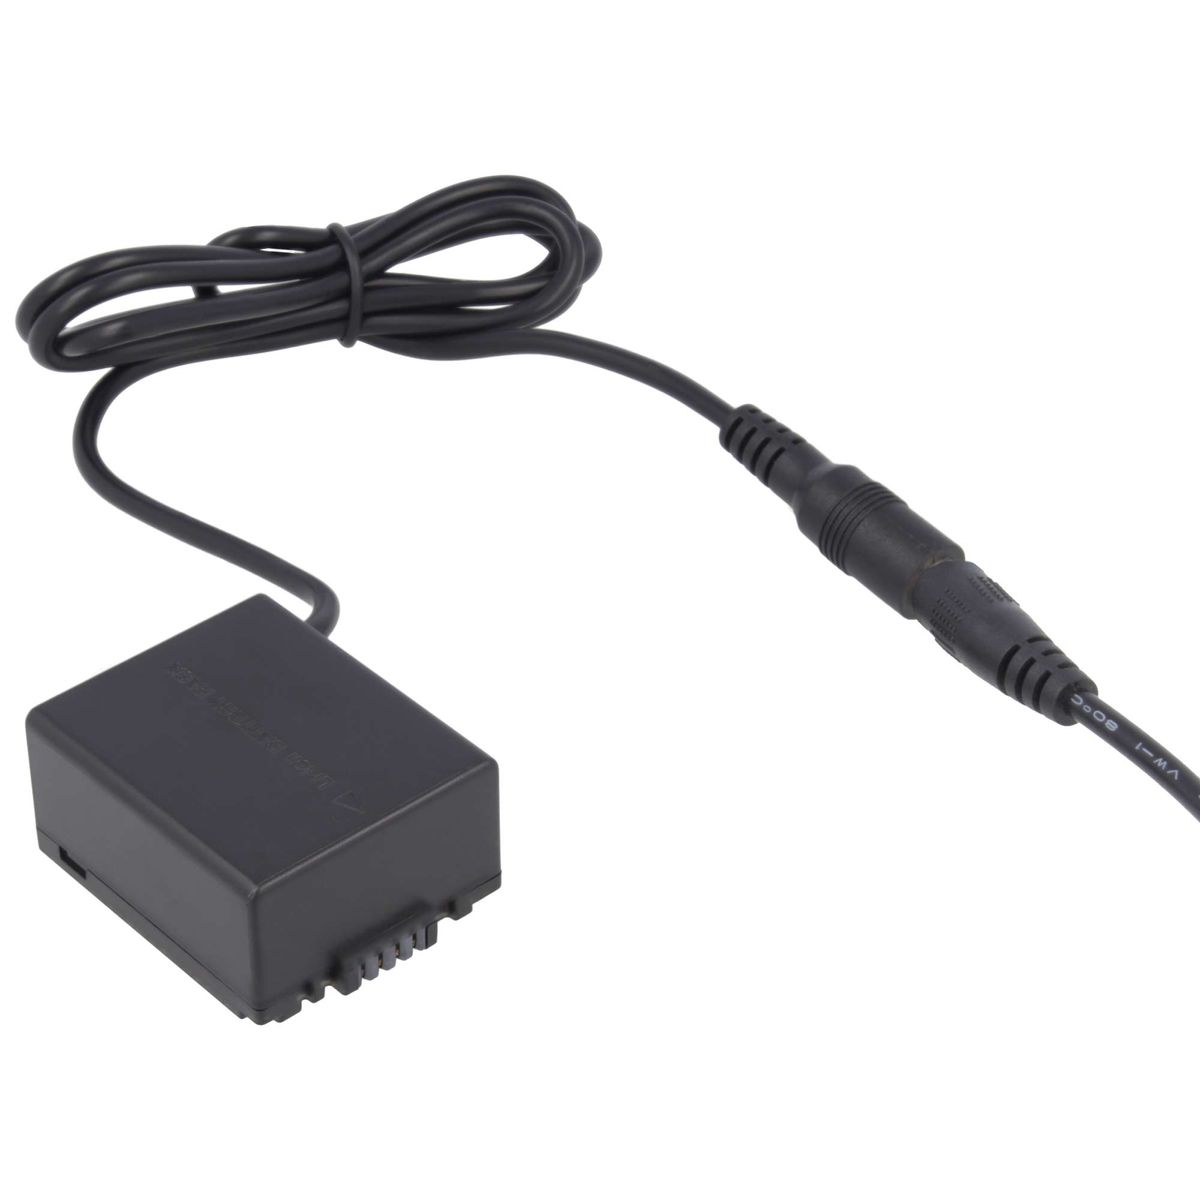 AKKU-KING USB-C mit keine DCC3 Ladegerät Panasonic, + Kuppler kompatibel Angabe Panasonic Adapter